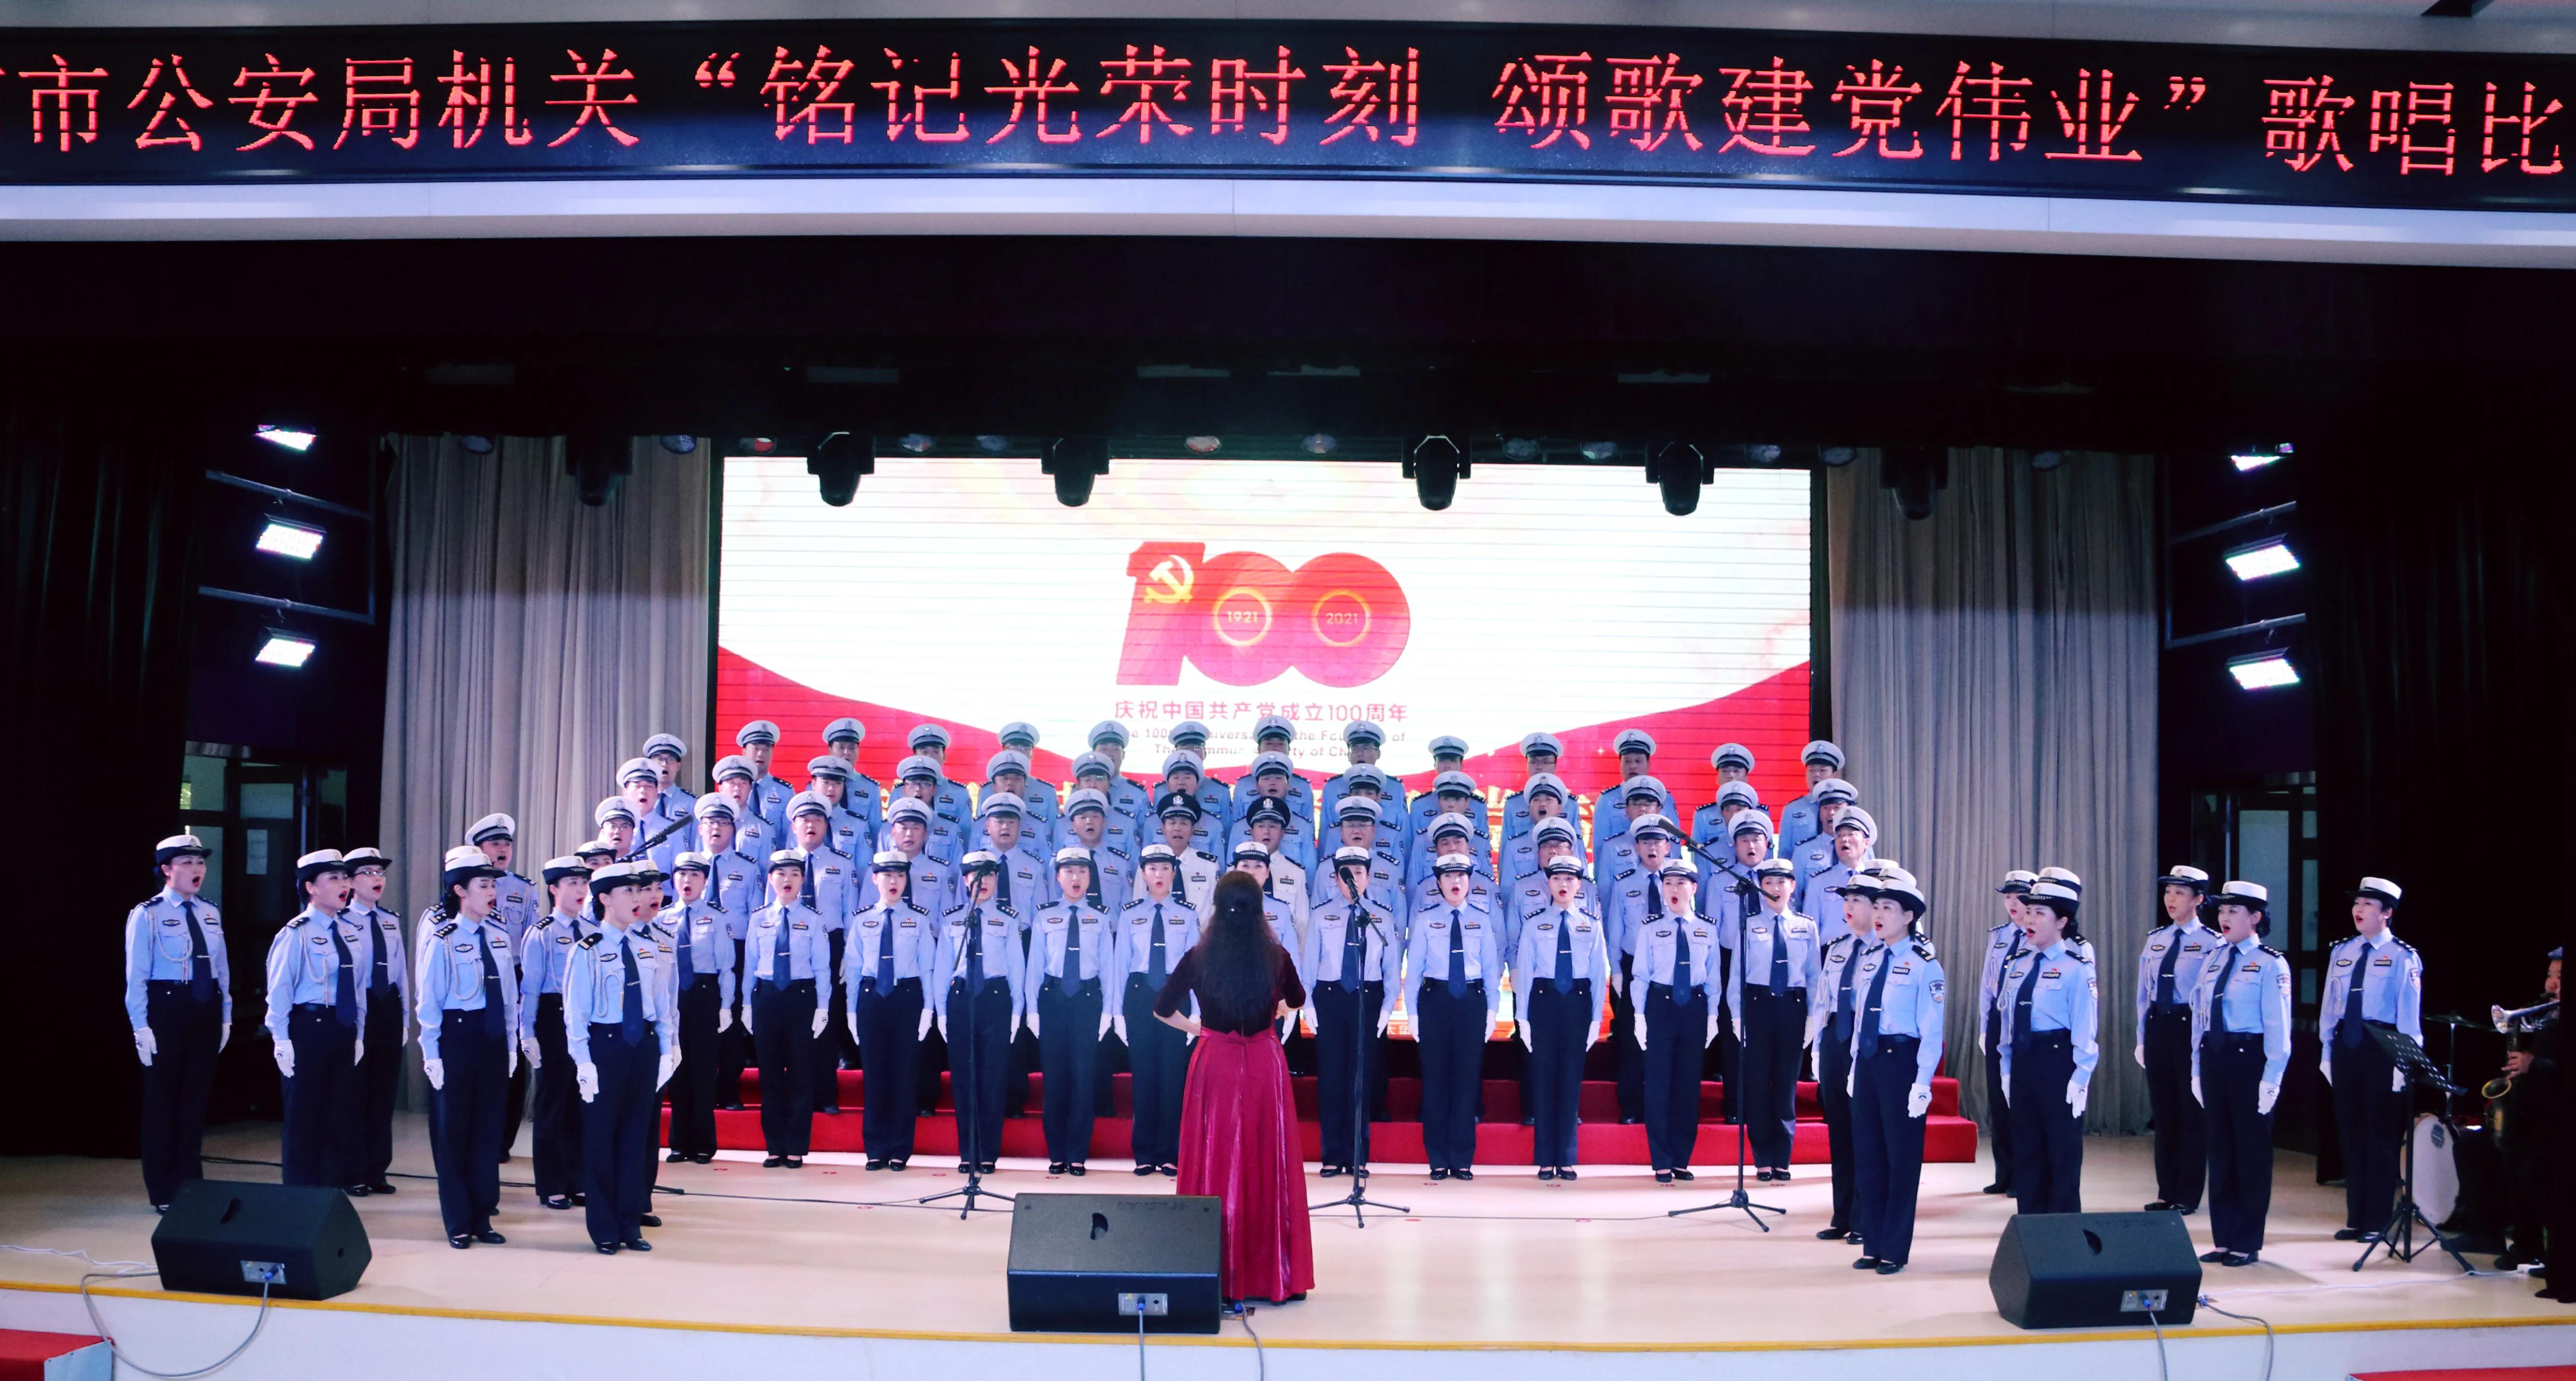 渭南市公安局机关举办“铭记光荣时刻·颂歌建党伟业”主题歌唱比赛